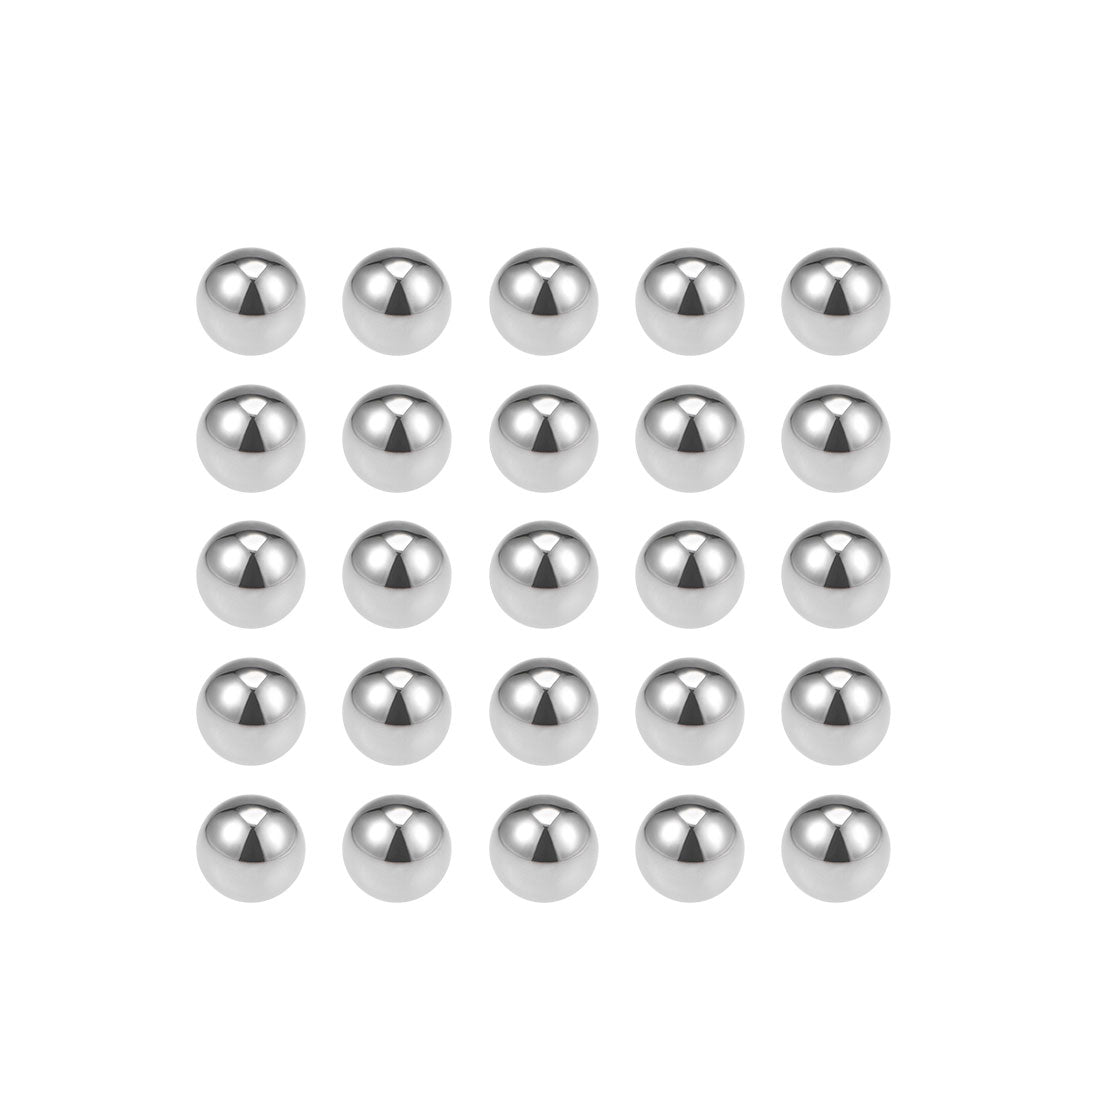 Uxcell Uxcell 1/4" Bearing Balls Tungsten Carbide G25 Precision Balls 2pcs